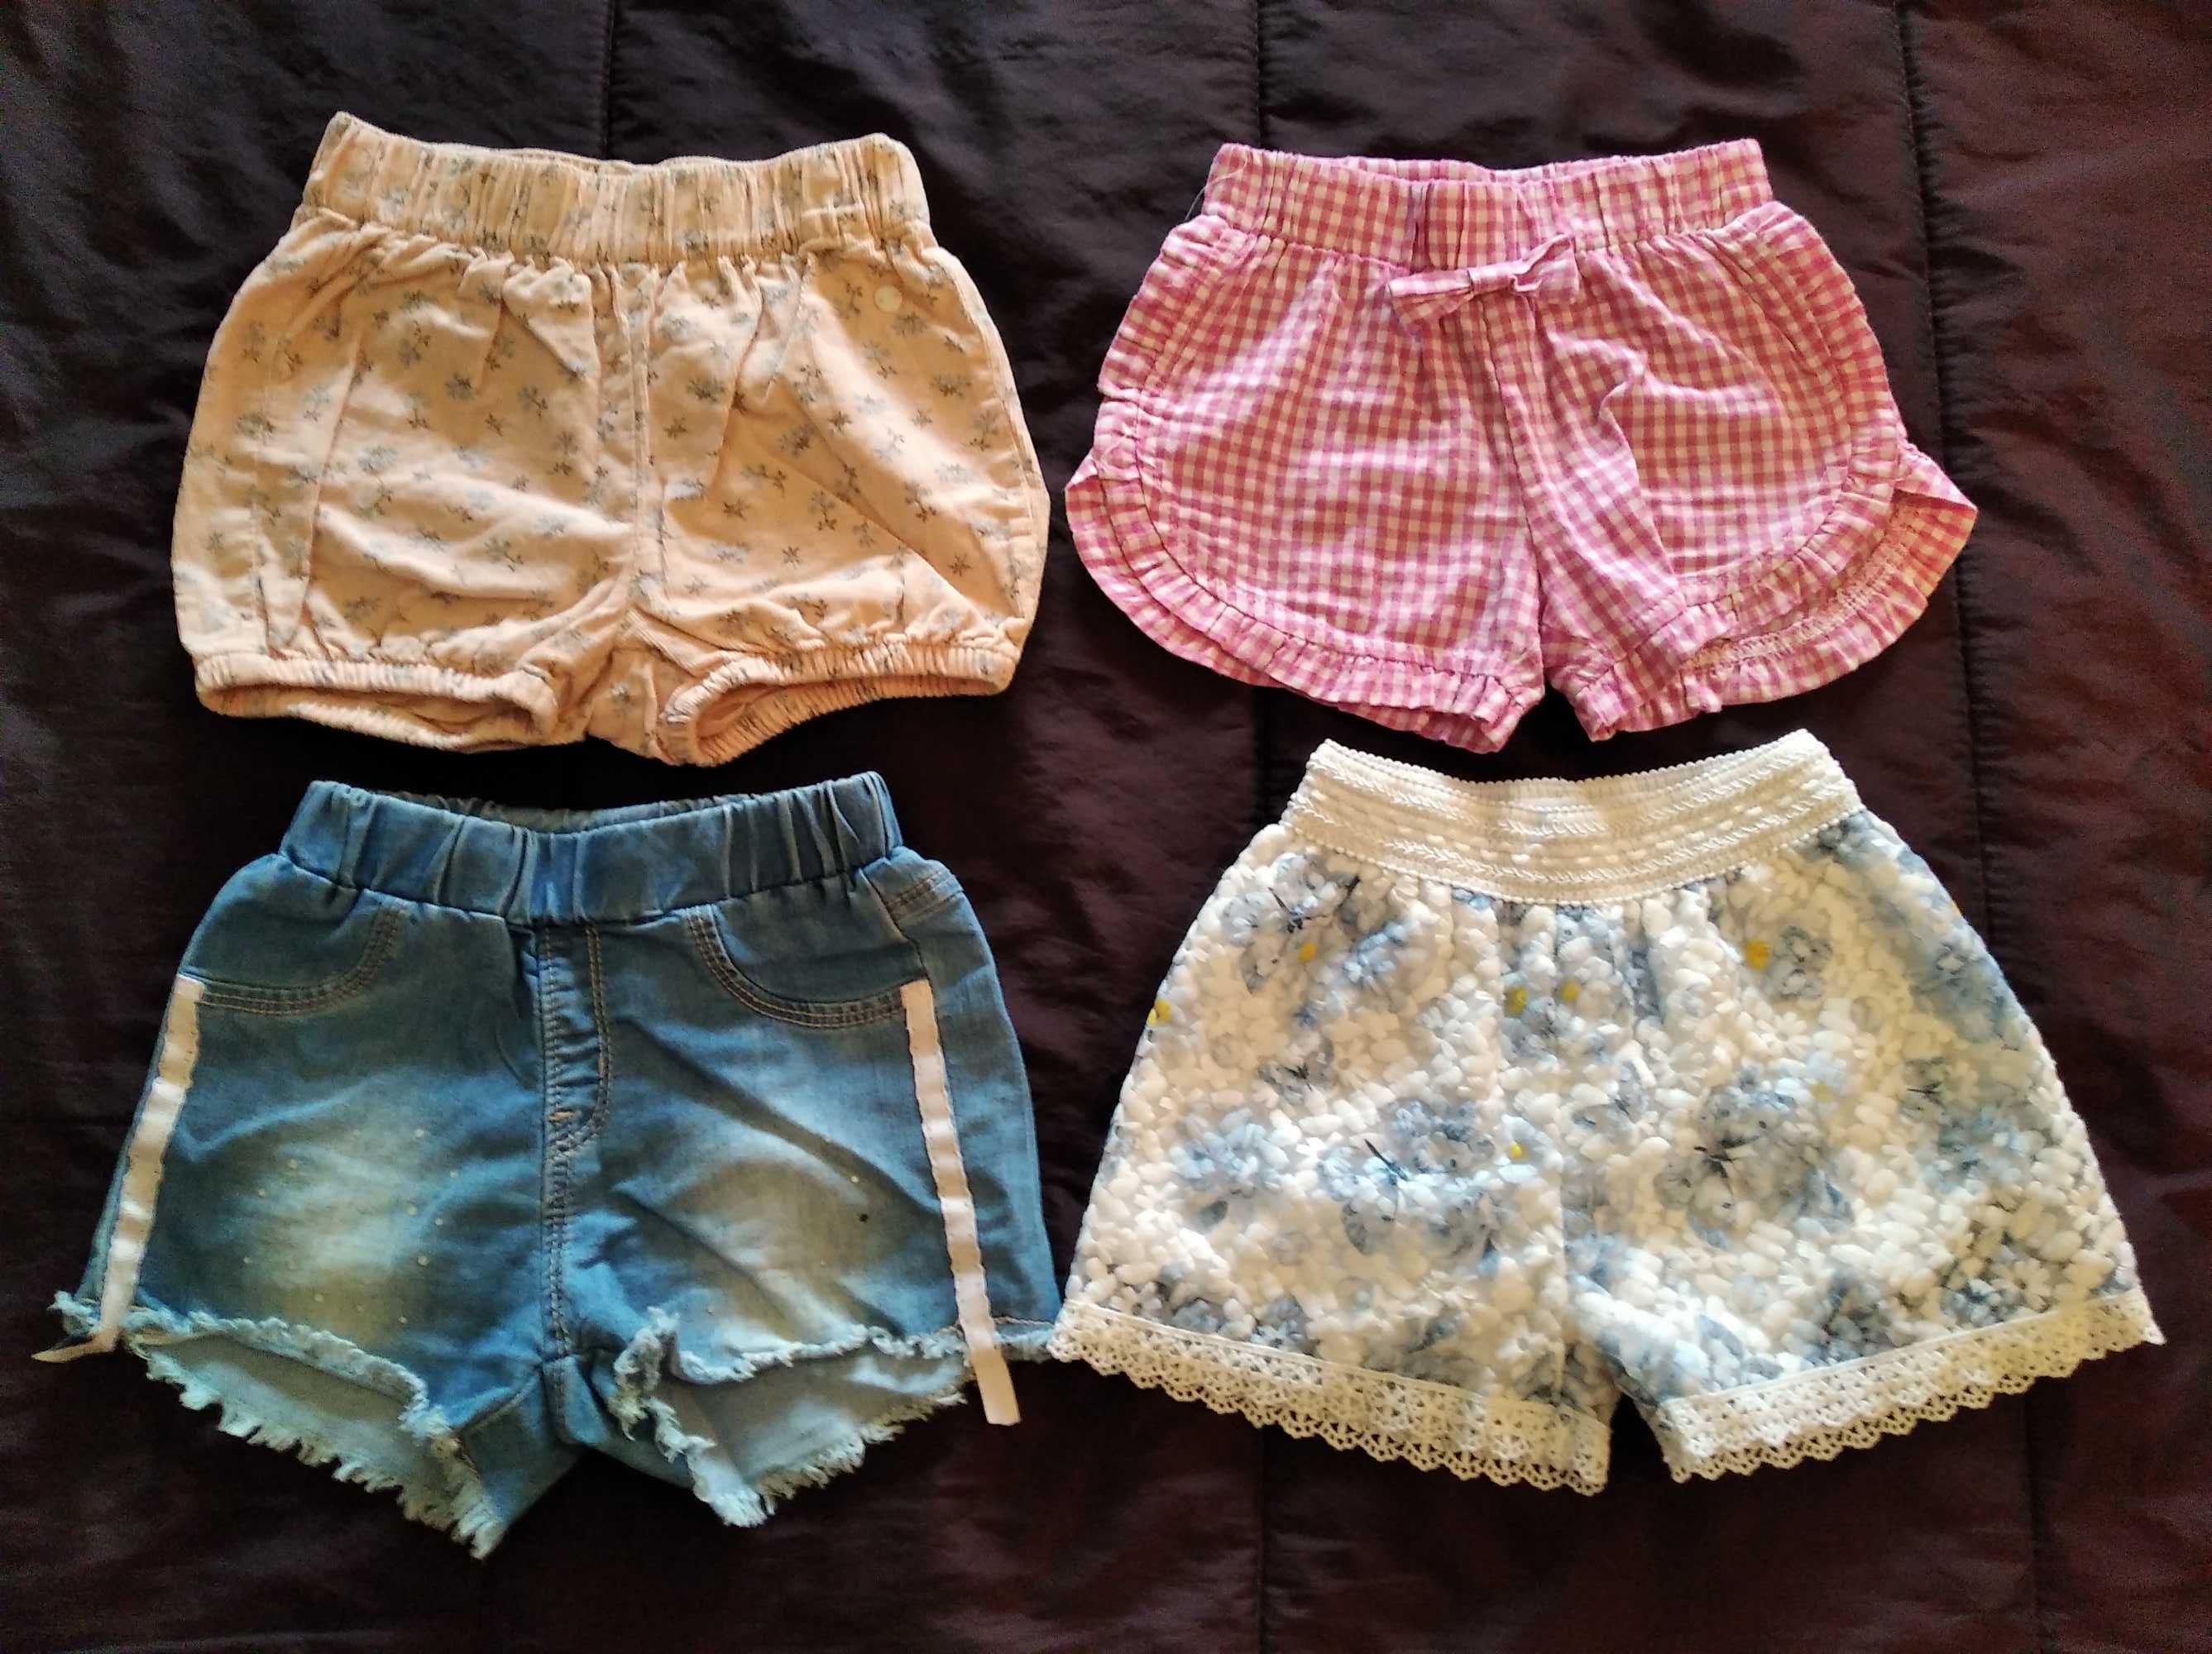 8 lotes de roupa de menina 1-2 anos